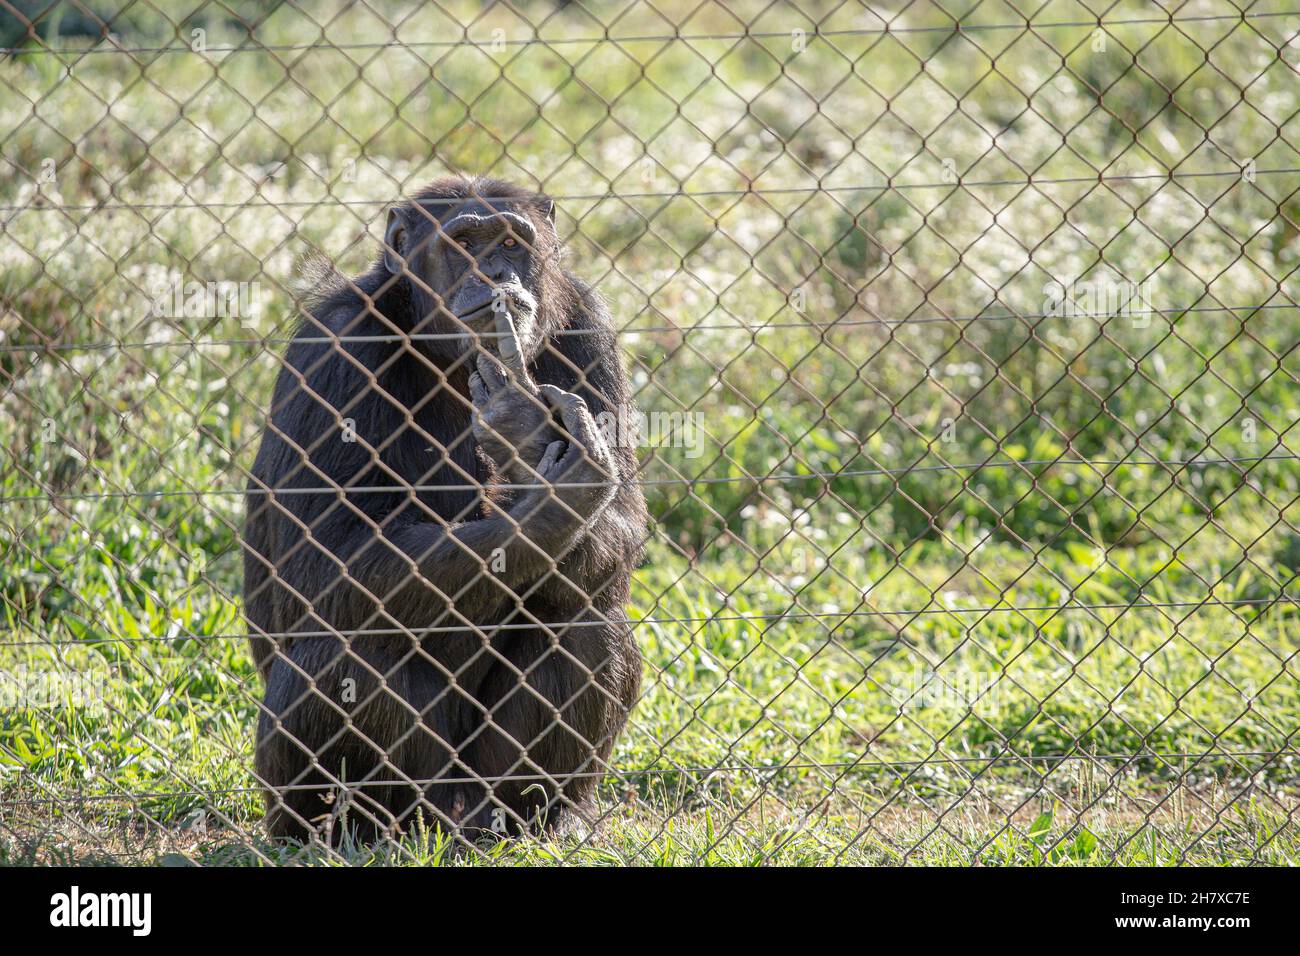 Vecchio scimpanzé maschio dietro una prigione di metallo in cattività Foto Stock